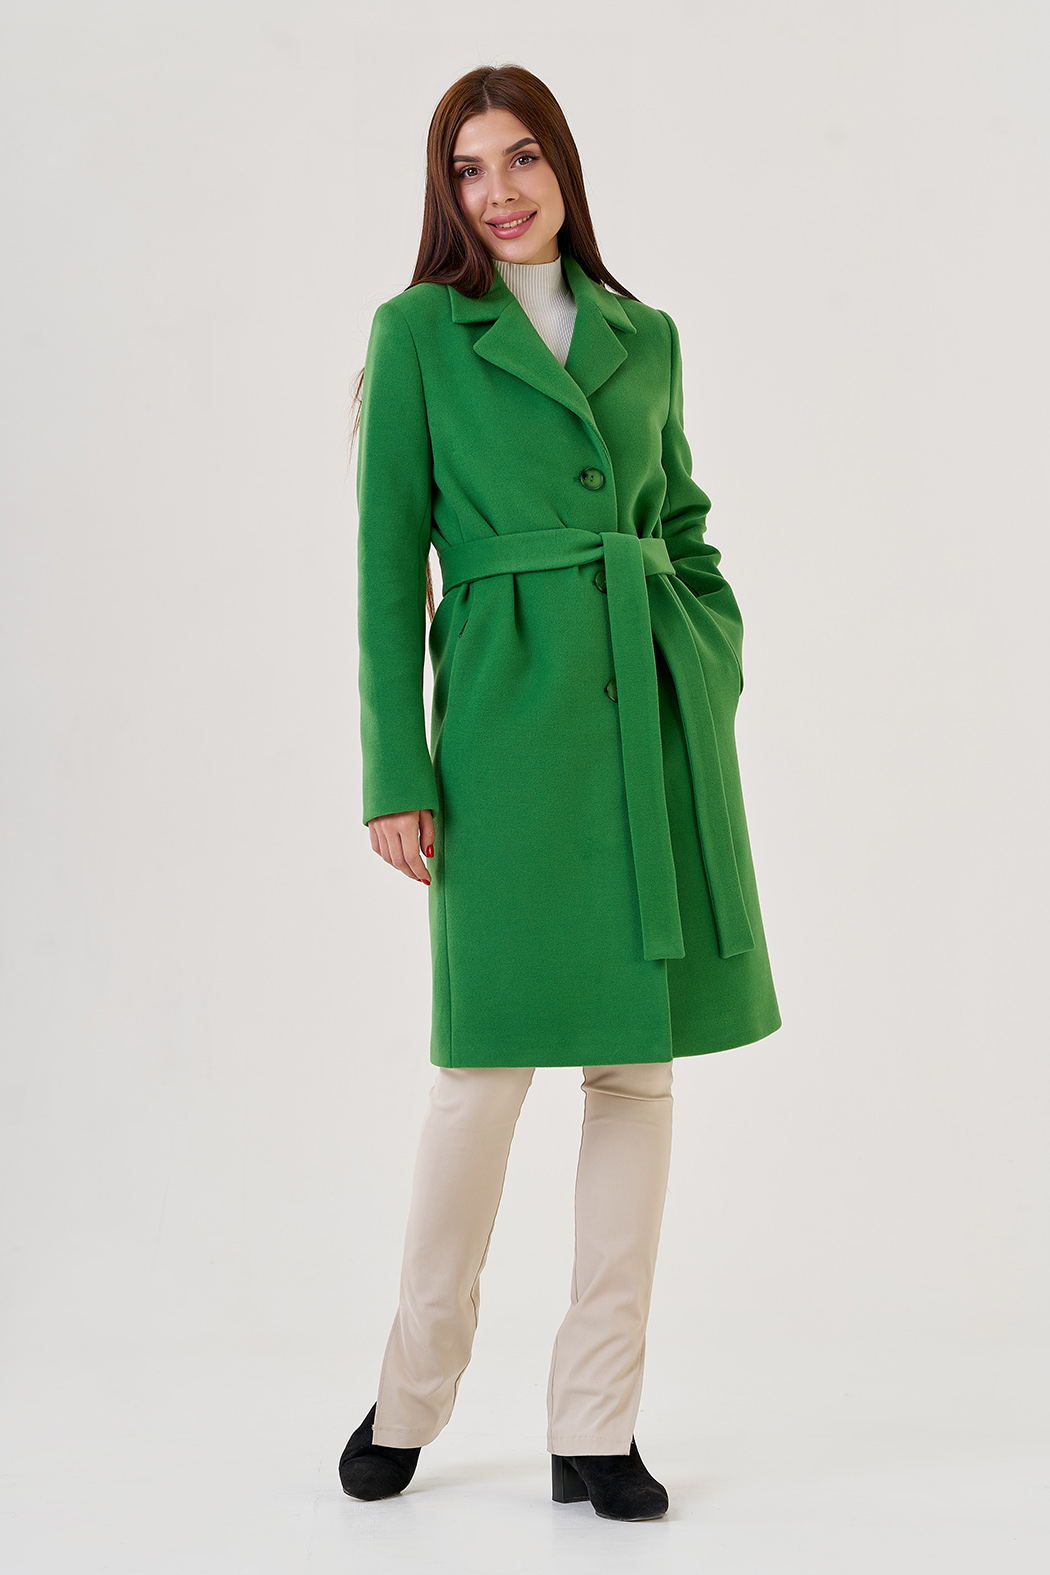 Пальто женское зеленого цвета 79179 (зелёный) купить в интернет-магазине с доставкой